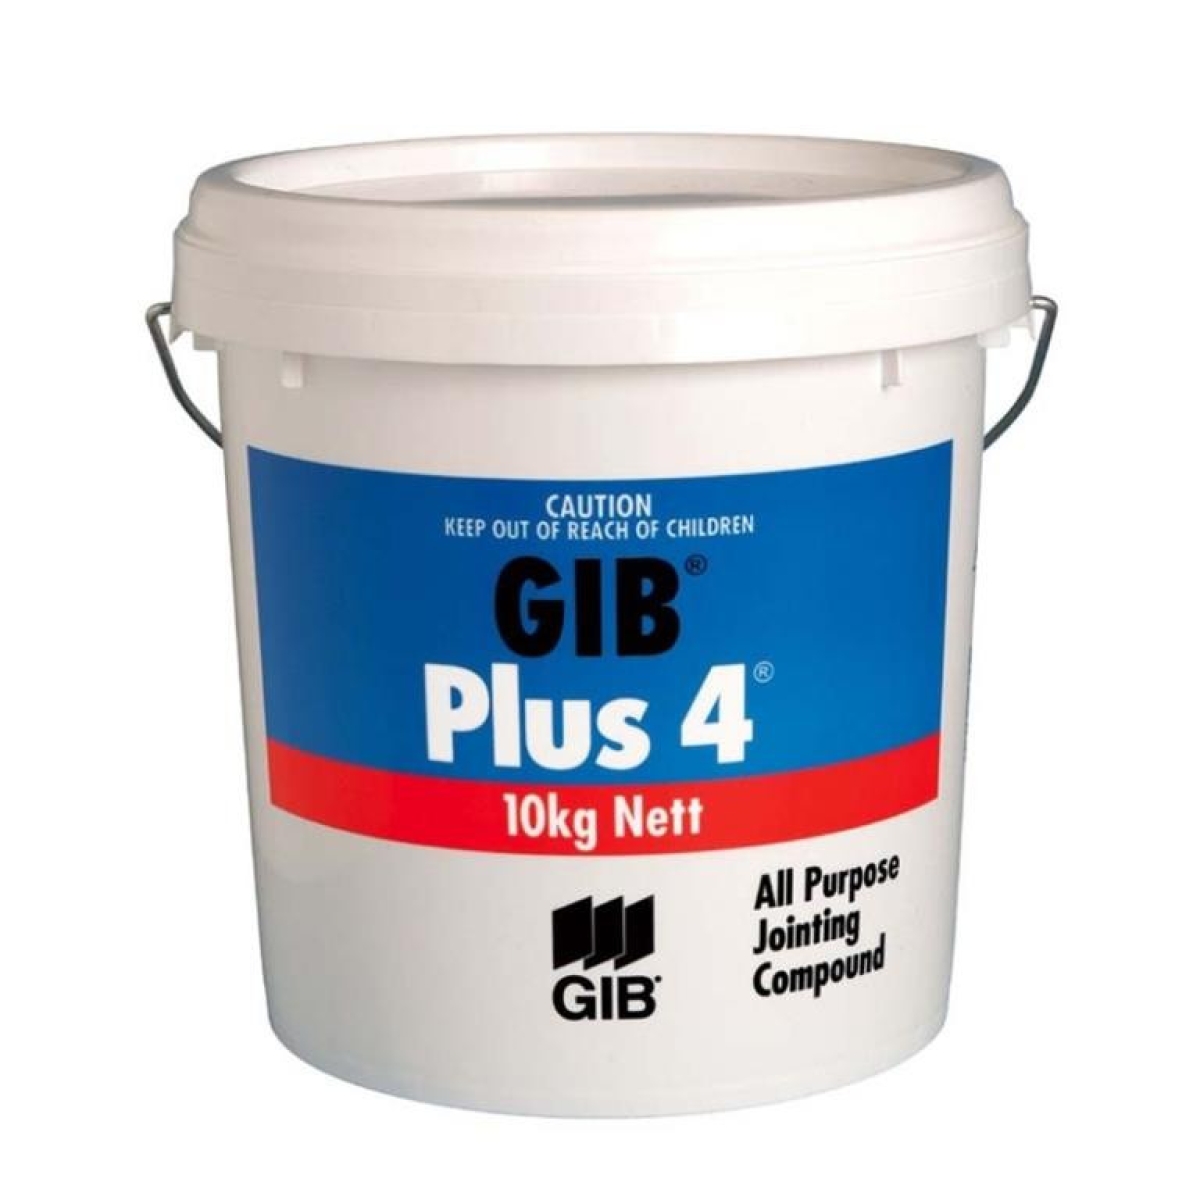 Gib Plus 4 Compound